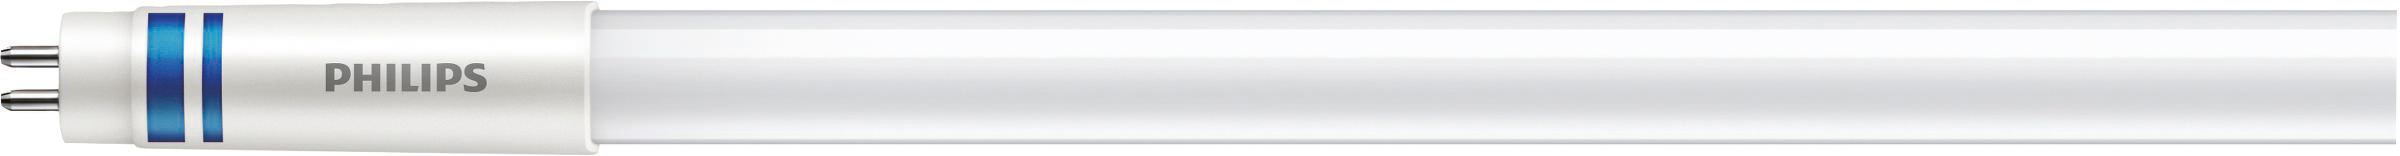 Philips Lighting LED-Tube T5 f. EVG G5, 830, 1449mm MAS LEDtube#41905600 günstig online kaufen